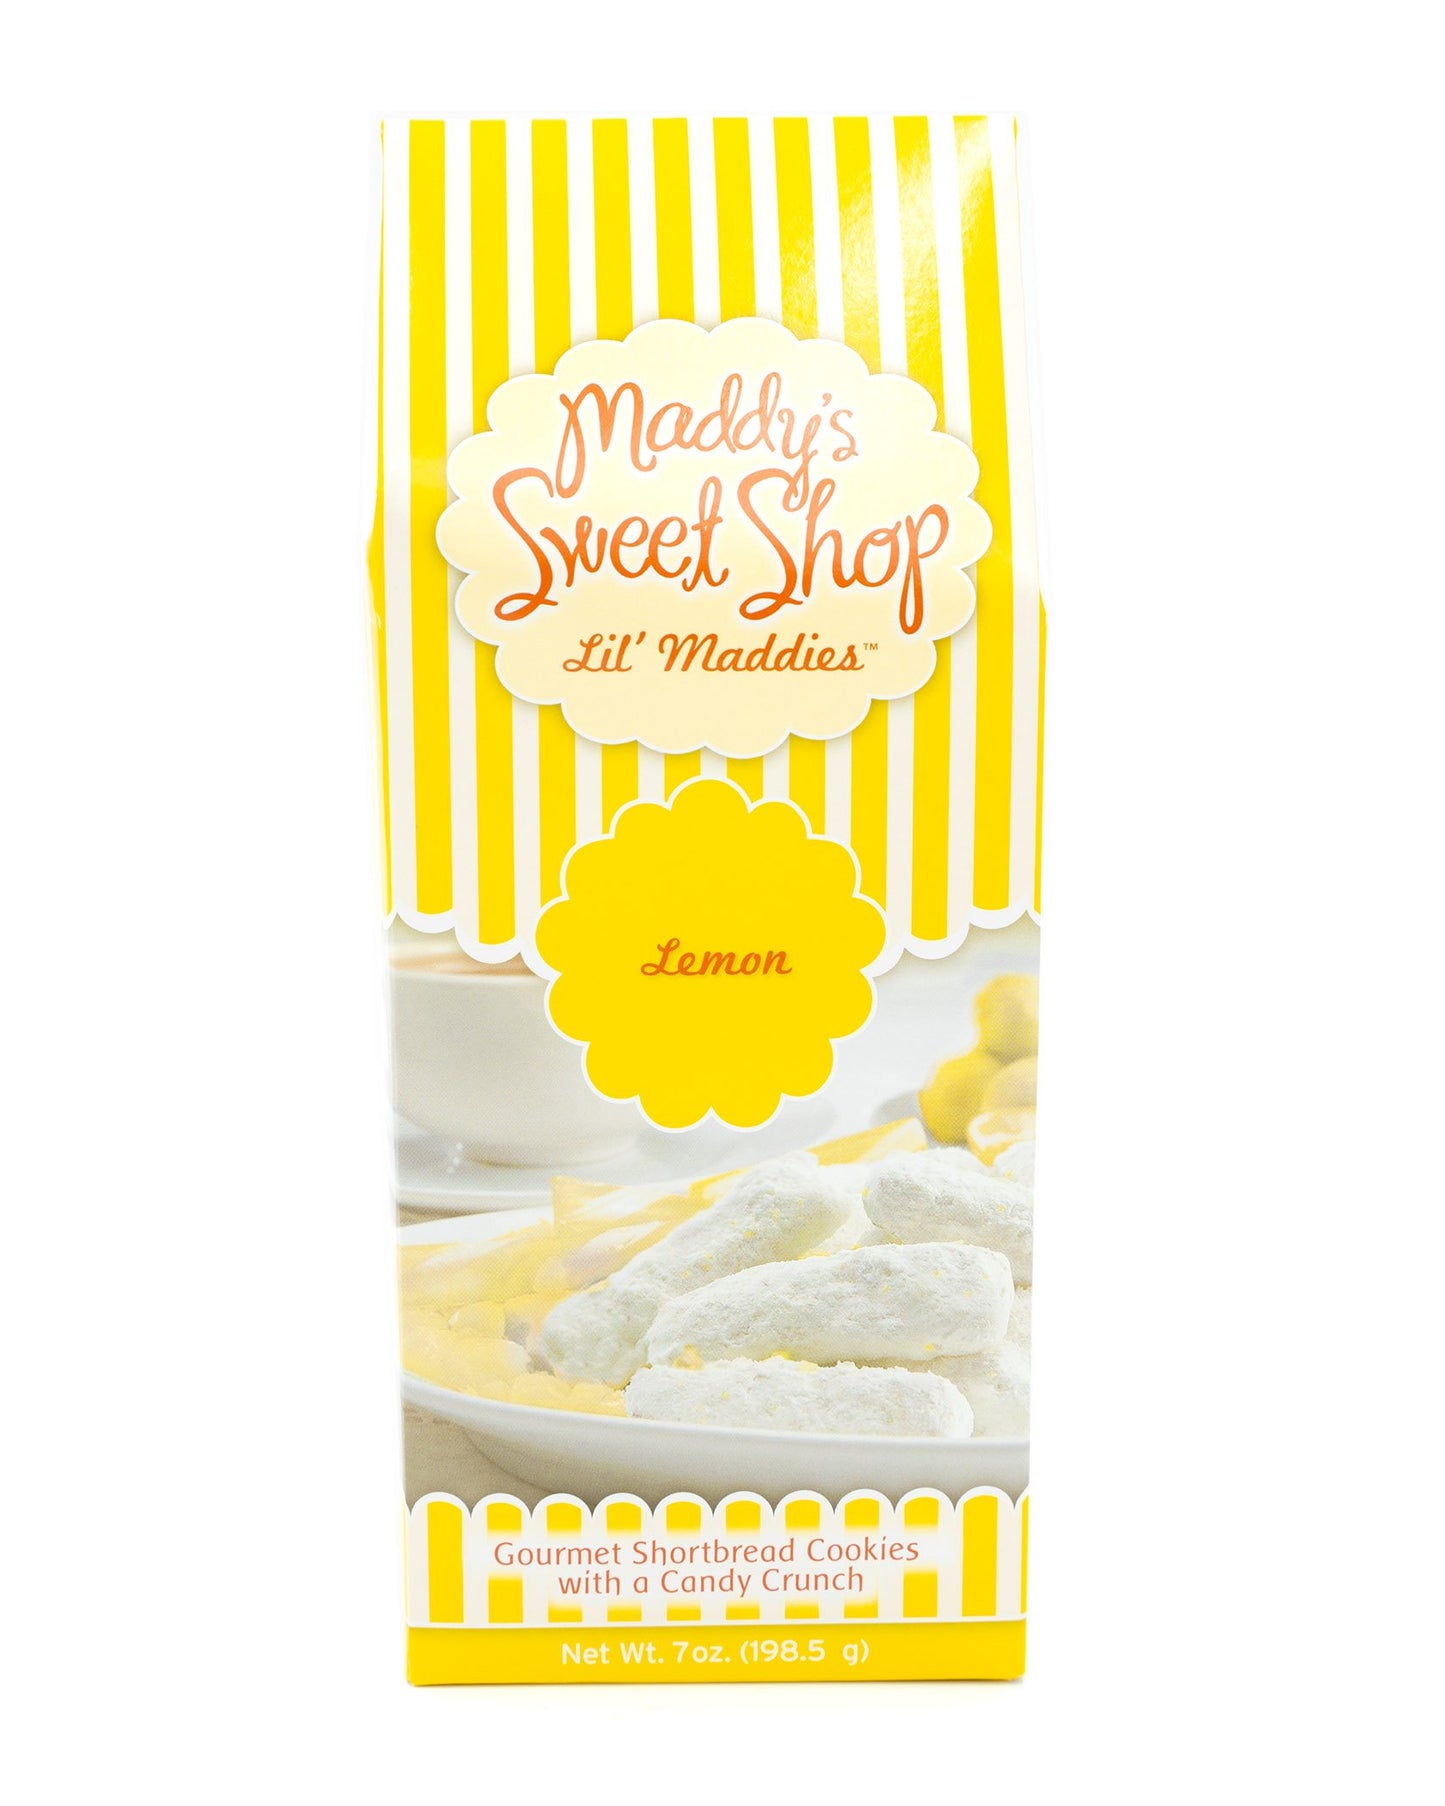 Maddie's Sweet Shop - Lemon Shortbread Cookies